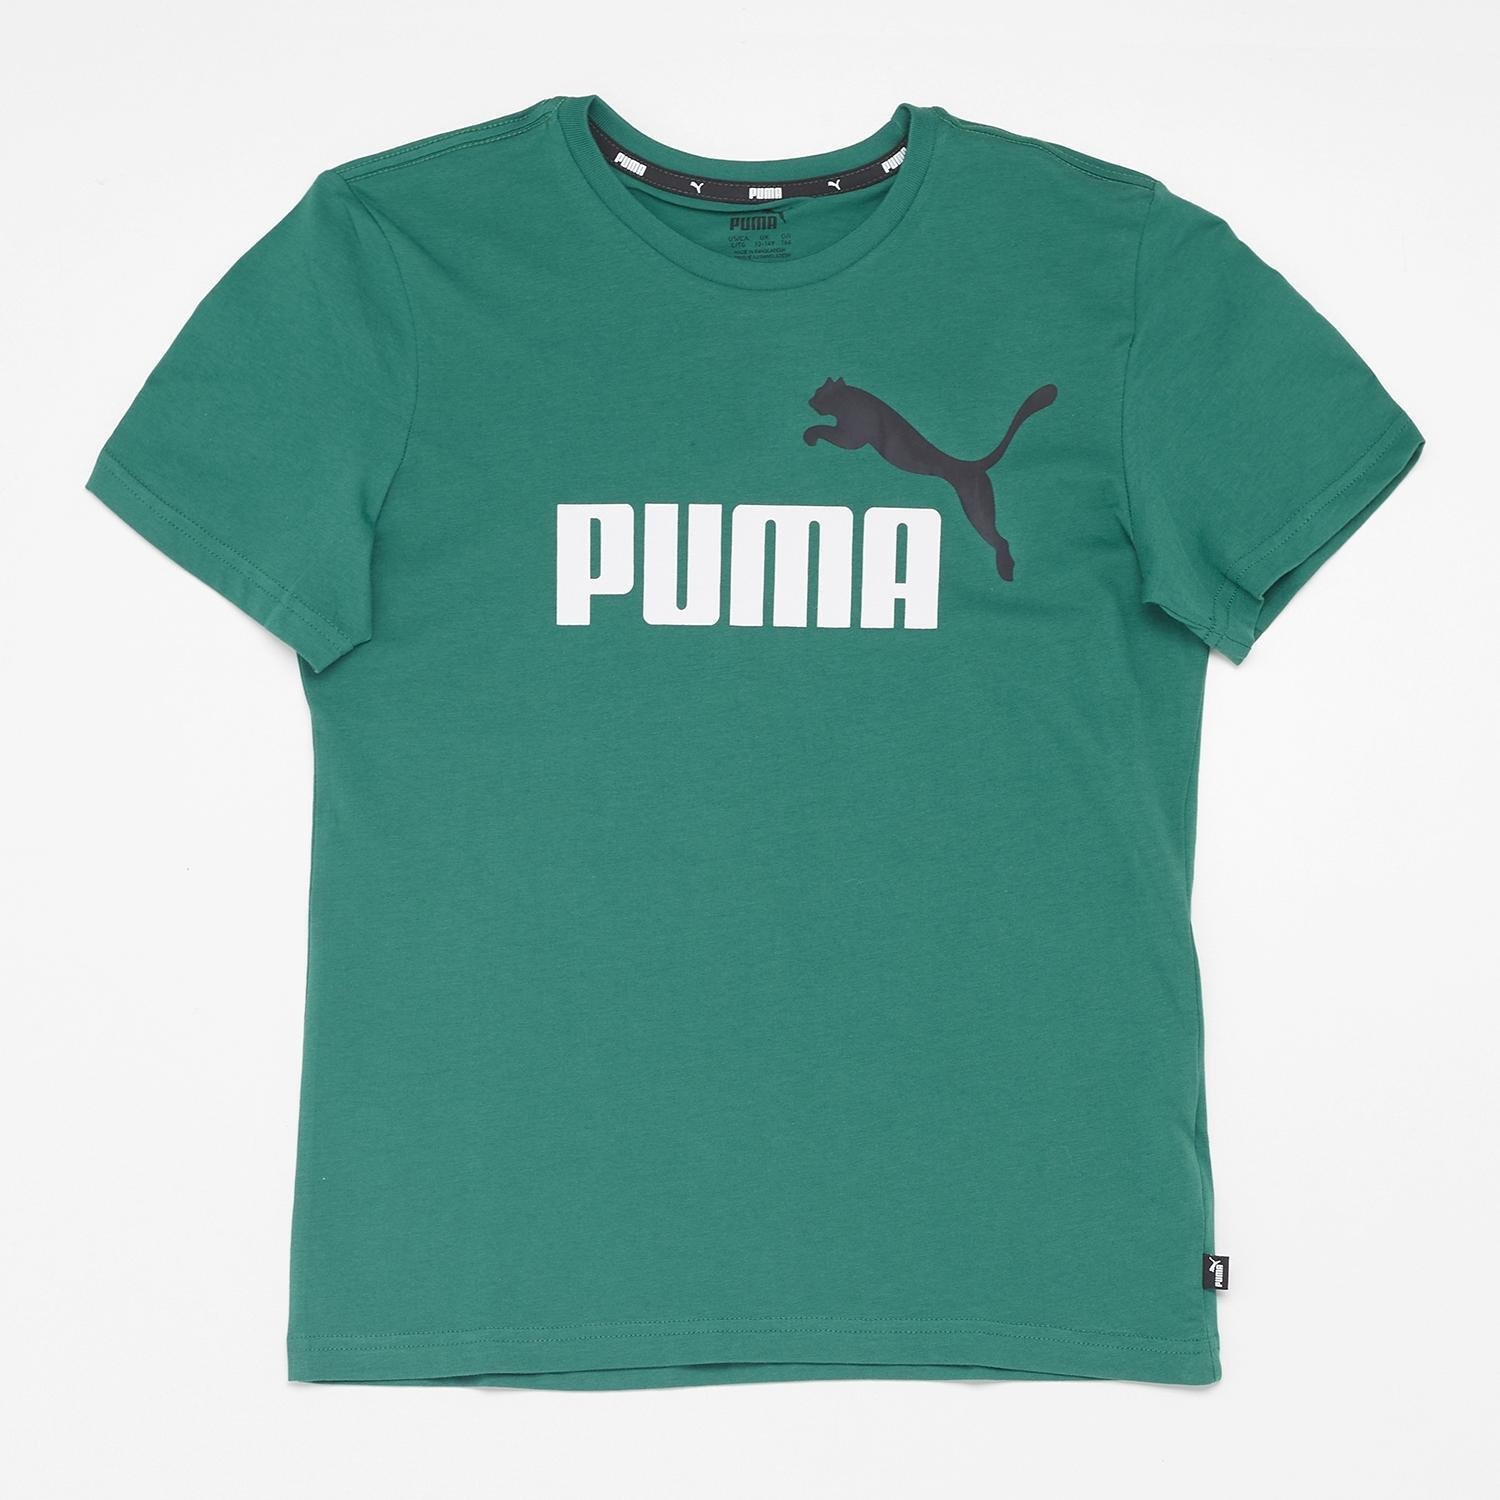 Puma Puma trui groen kinderen kinderen